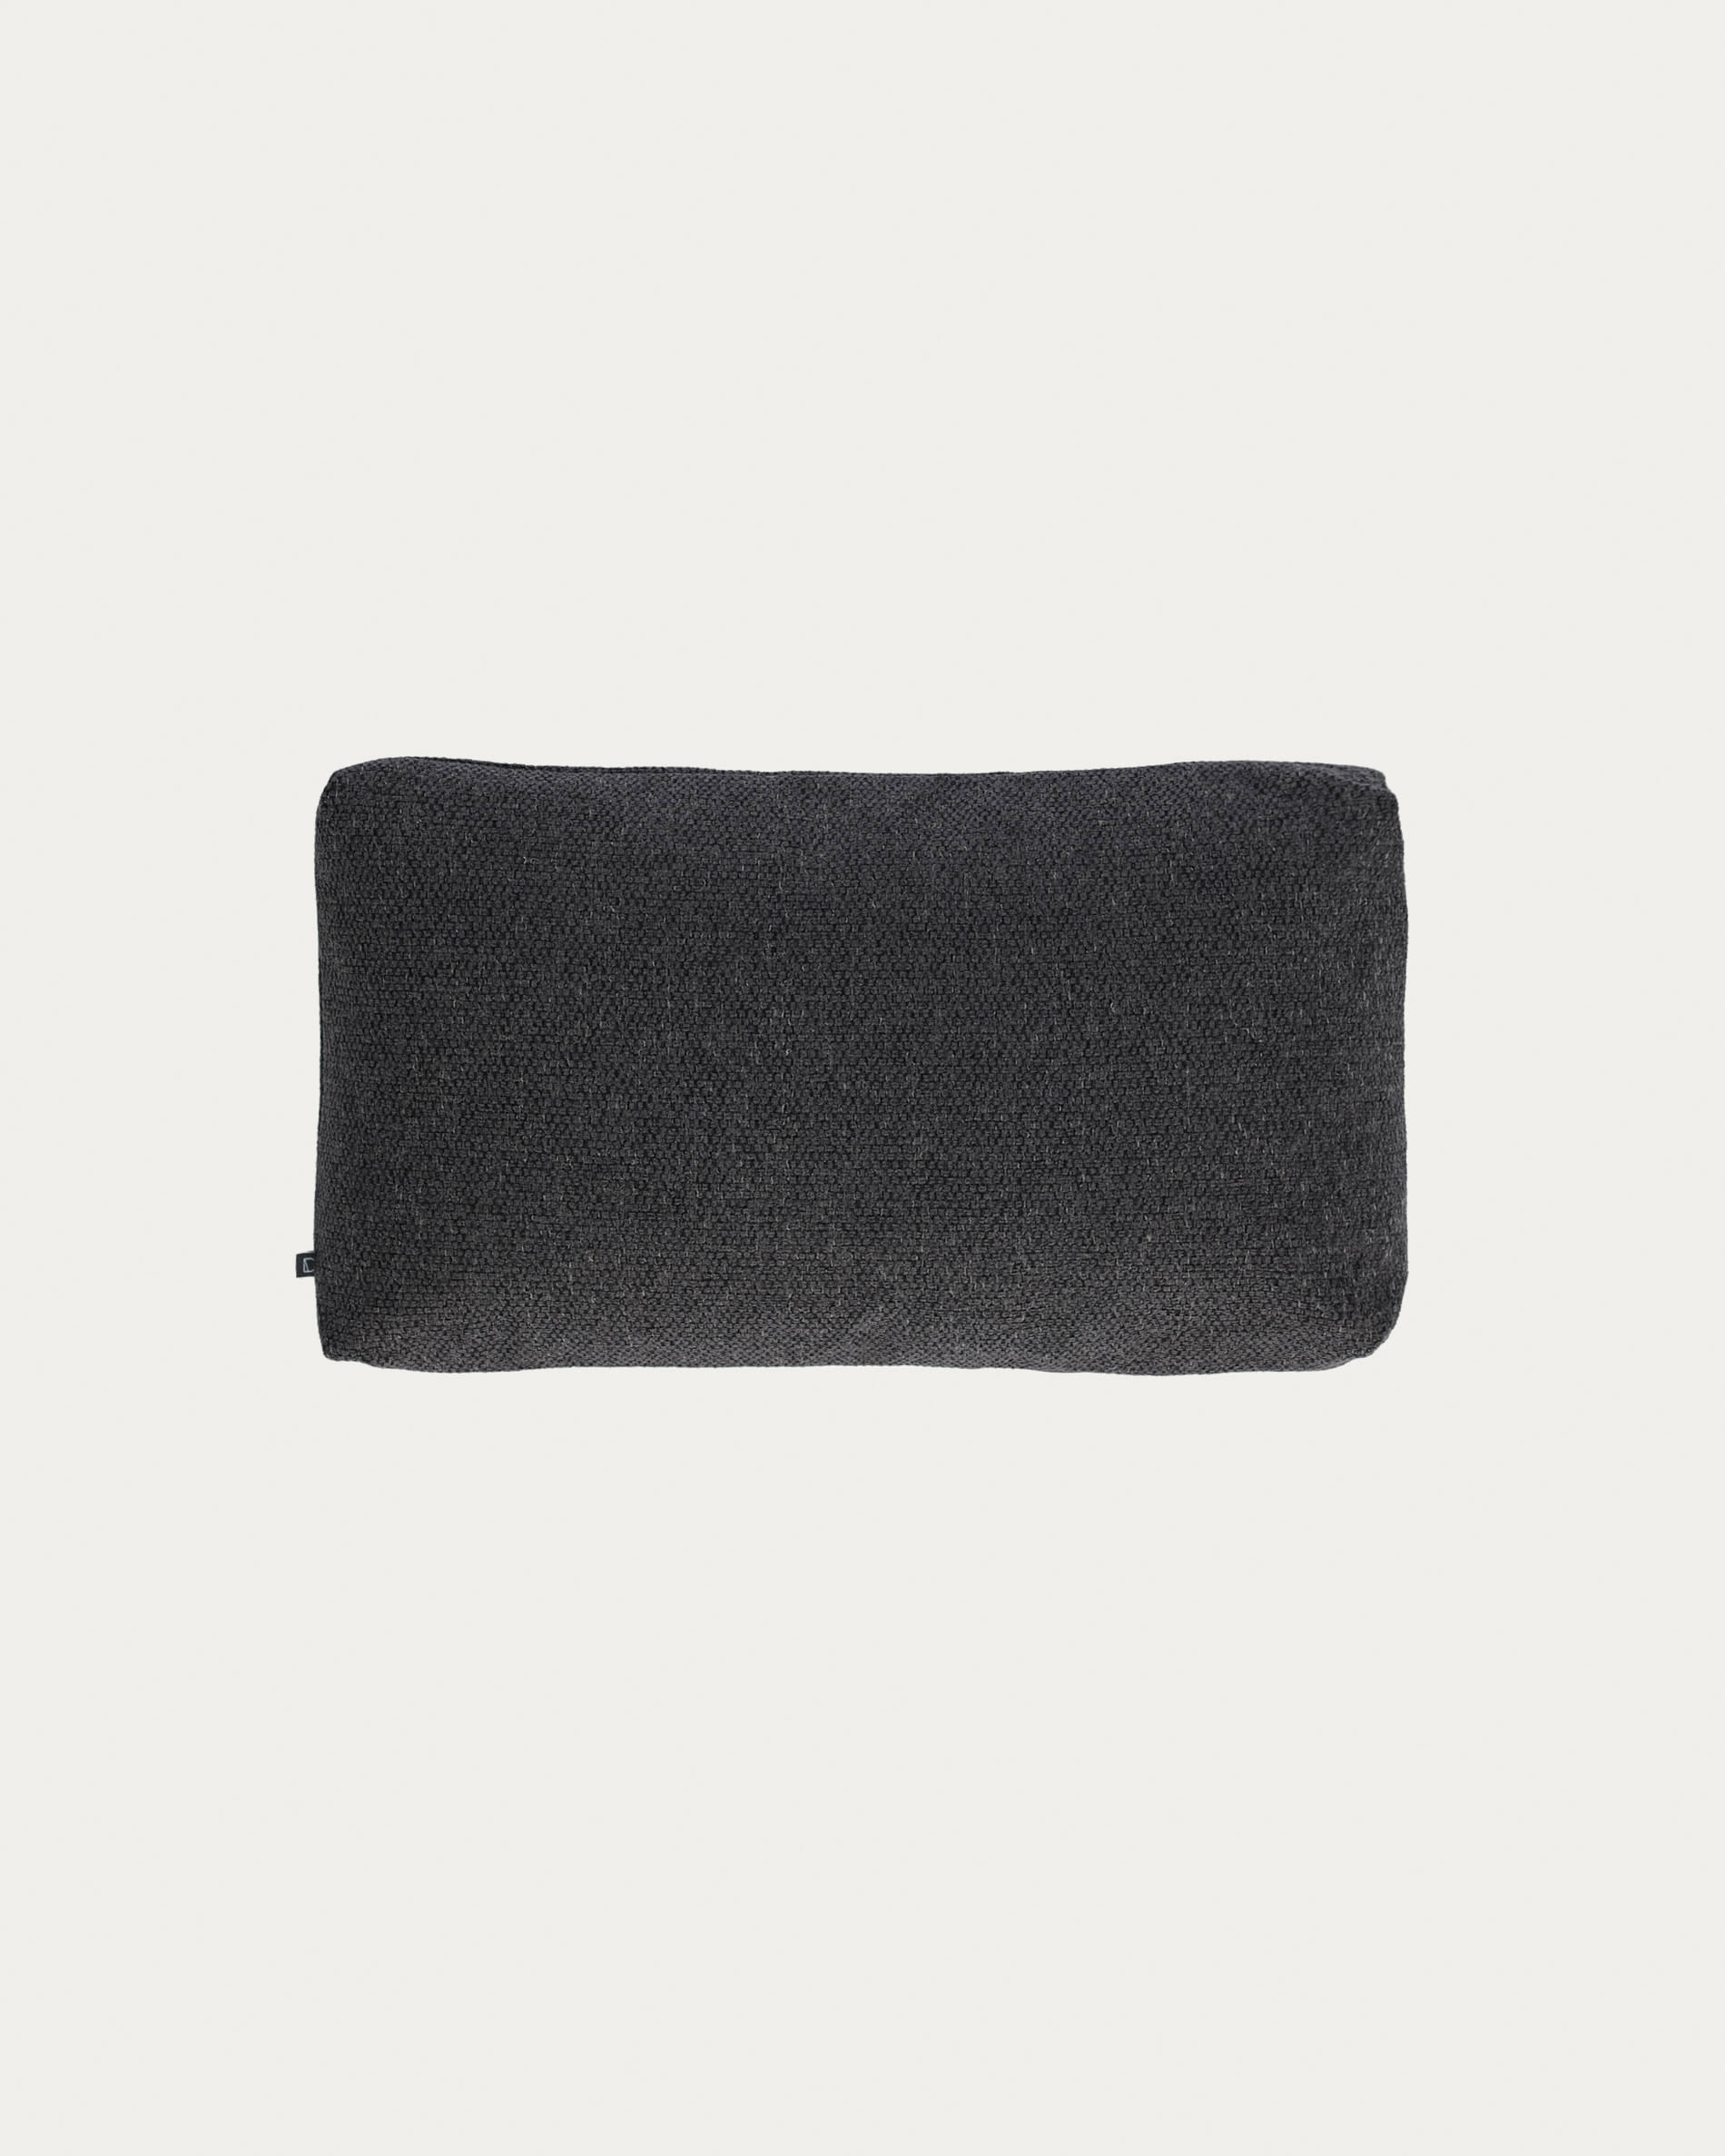 Galene cushion cover in grey, 30 x 50 cm